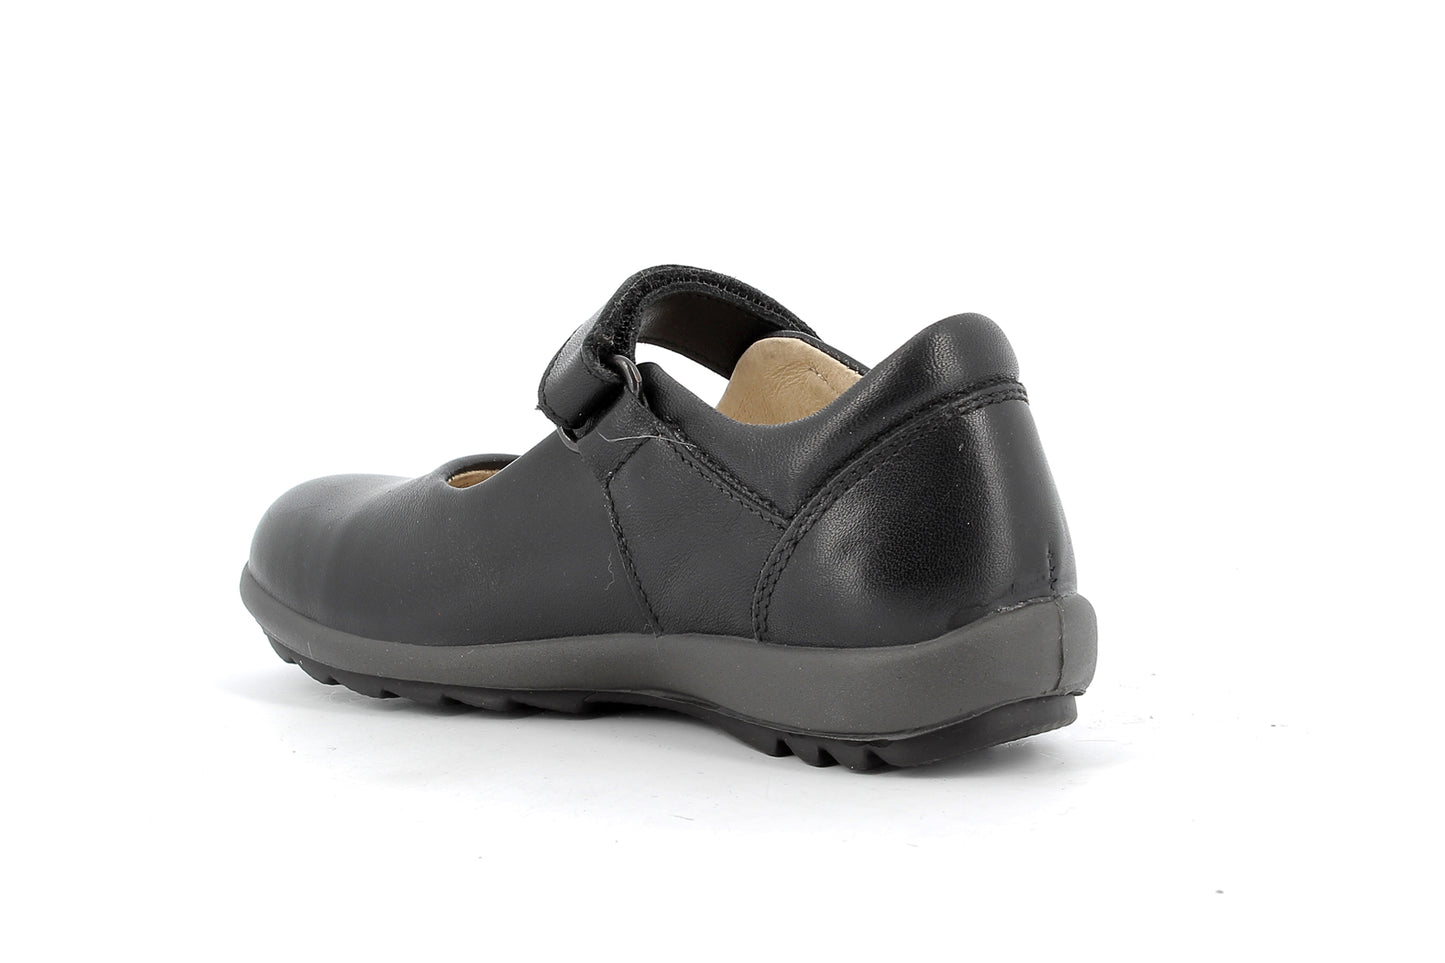 Olea Black Leather Mary-Jane Girls Shoe